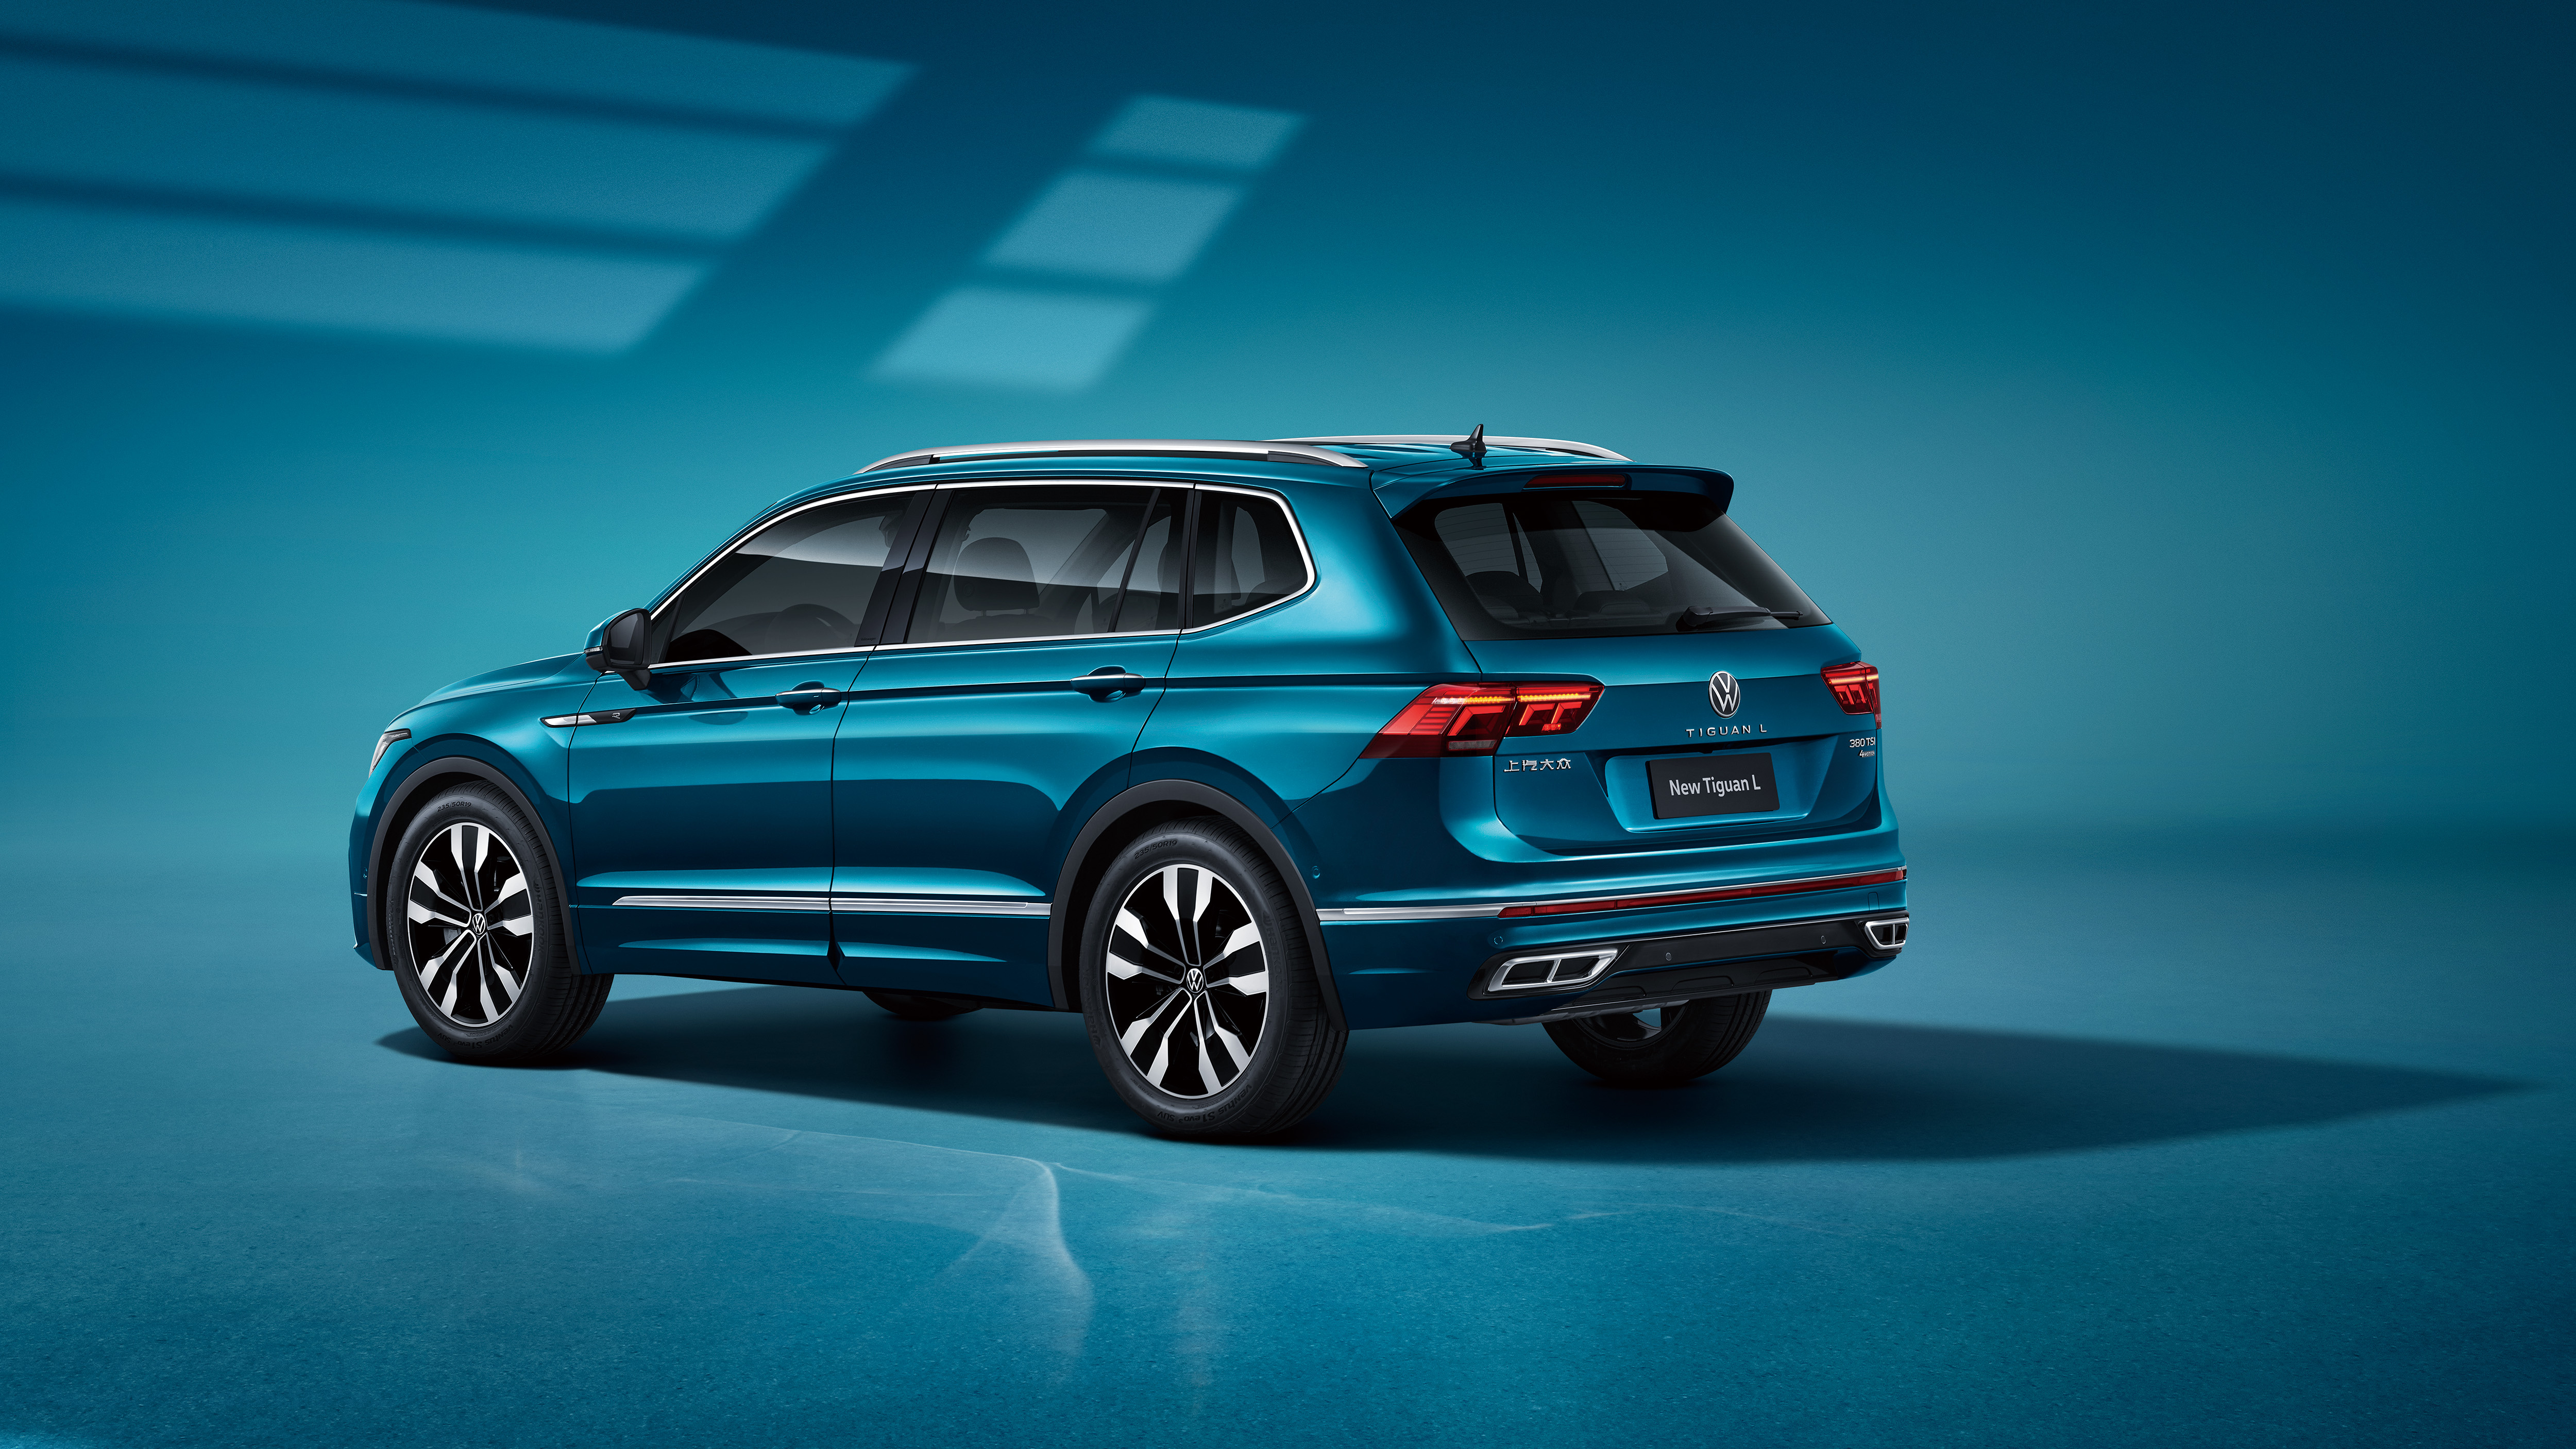 Фото бесплатно машины, Volkswagen, кроссовер, голубой авто на голубом фоне